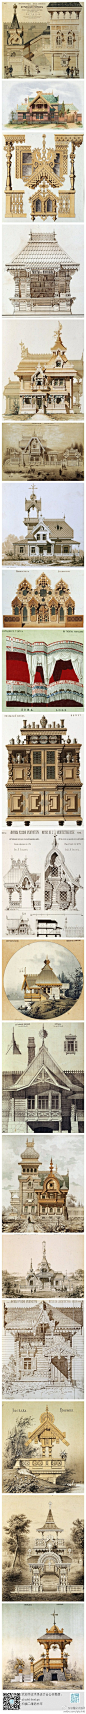 18世纪俄罗斯建筑设计图